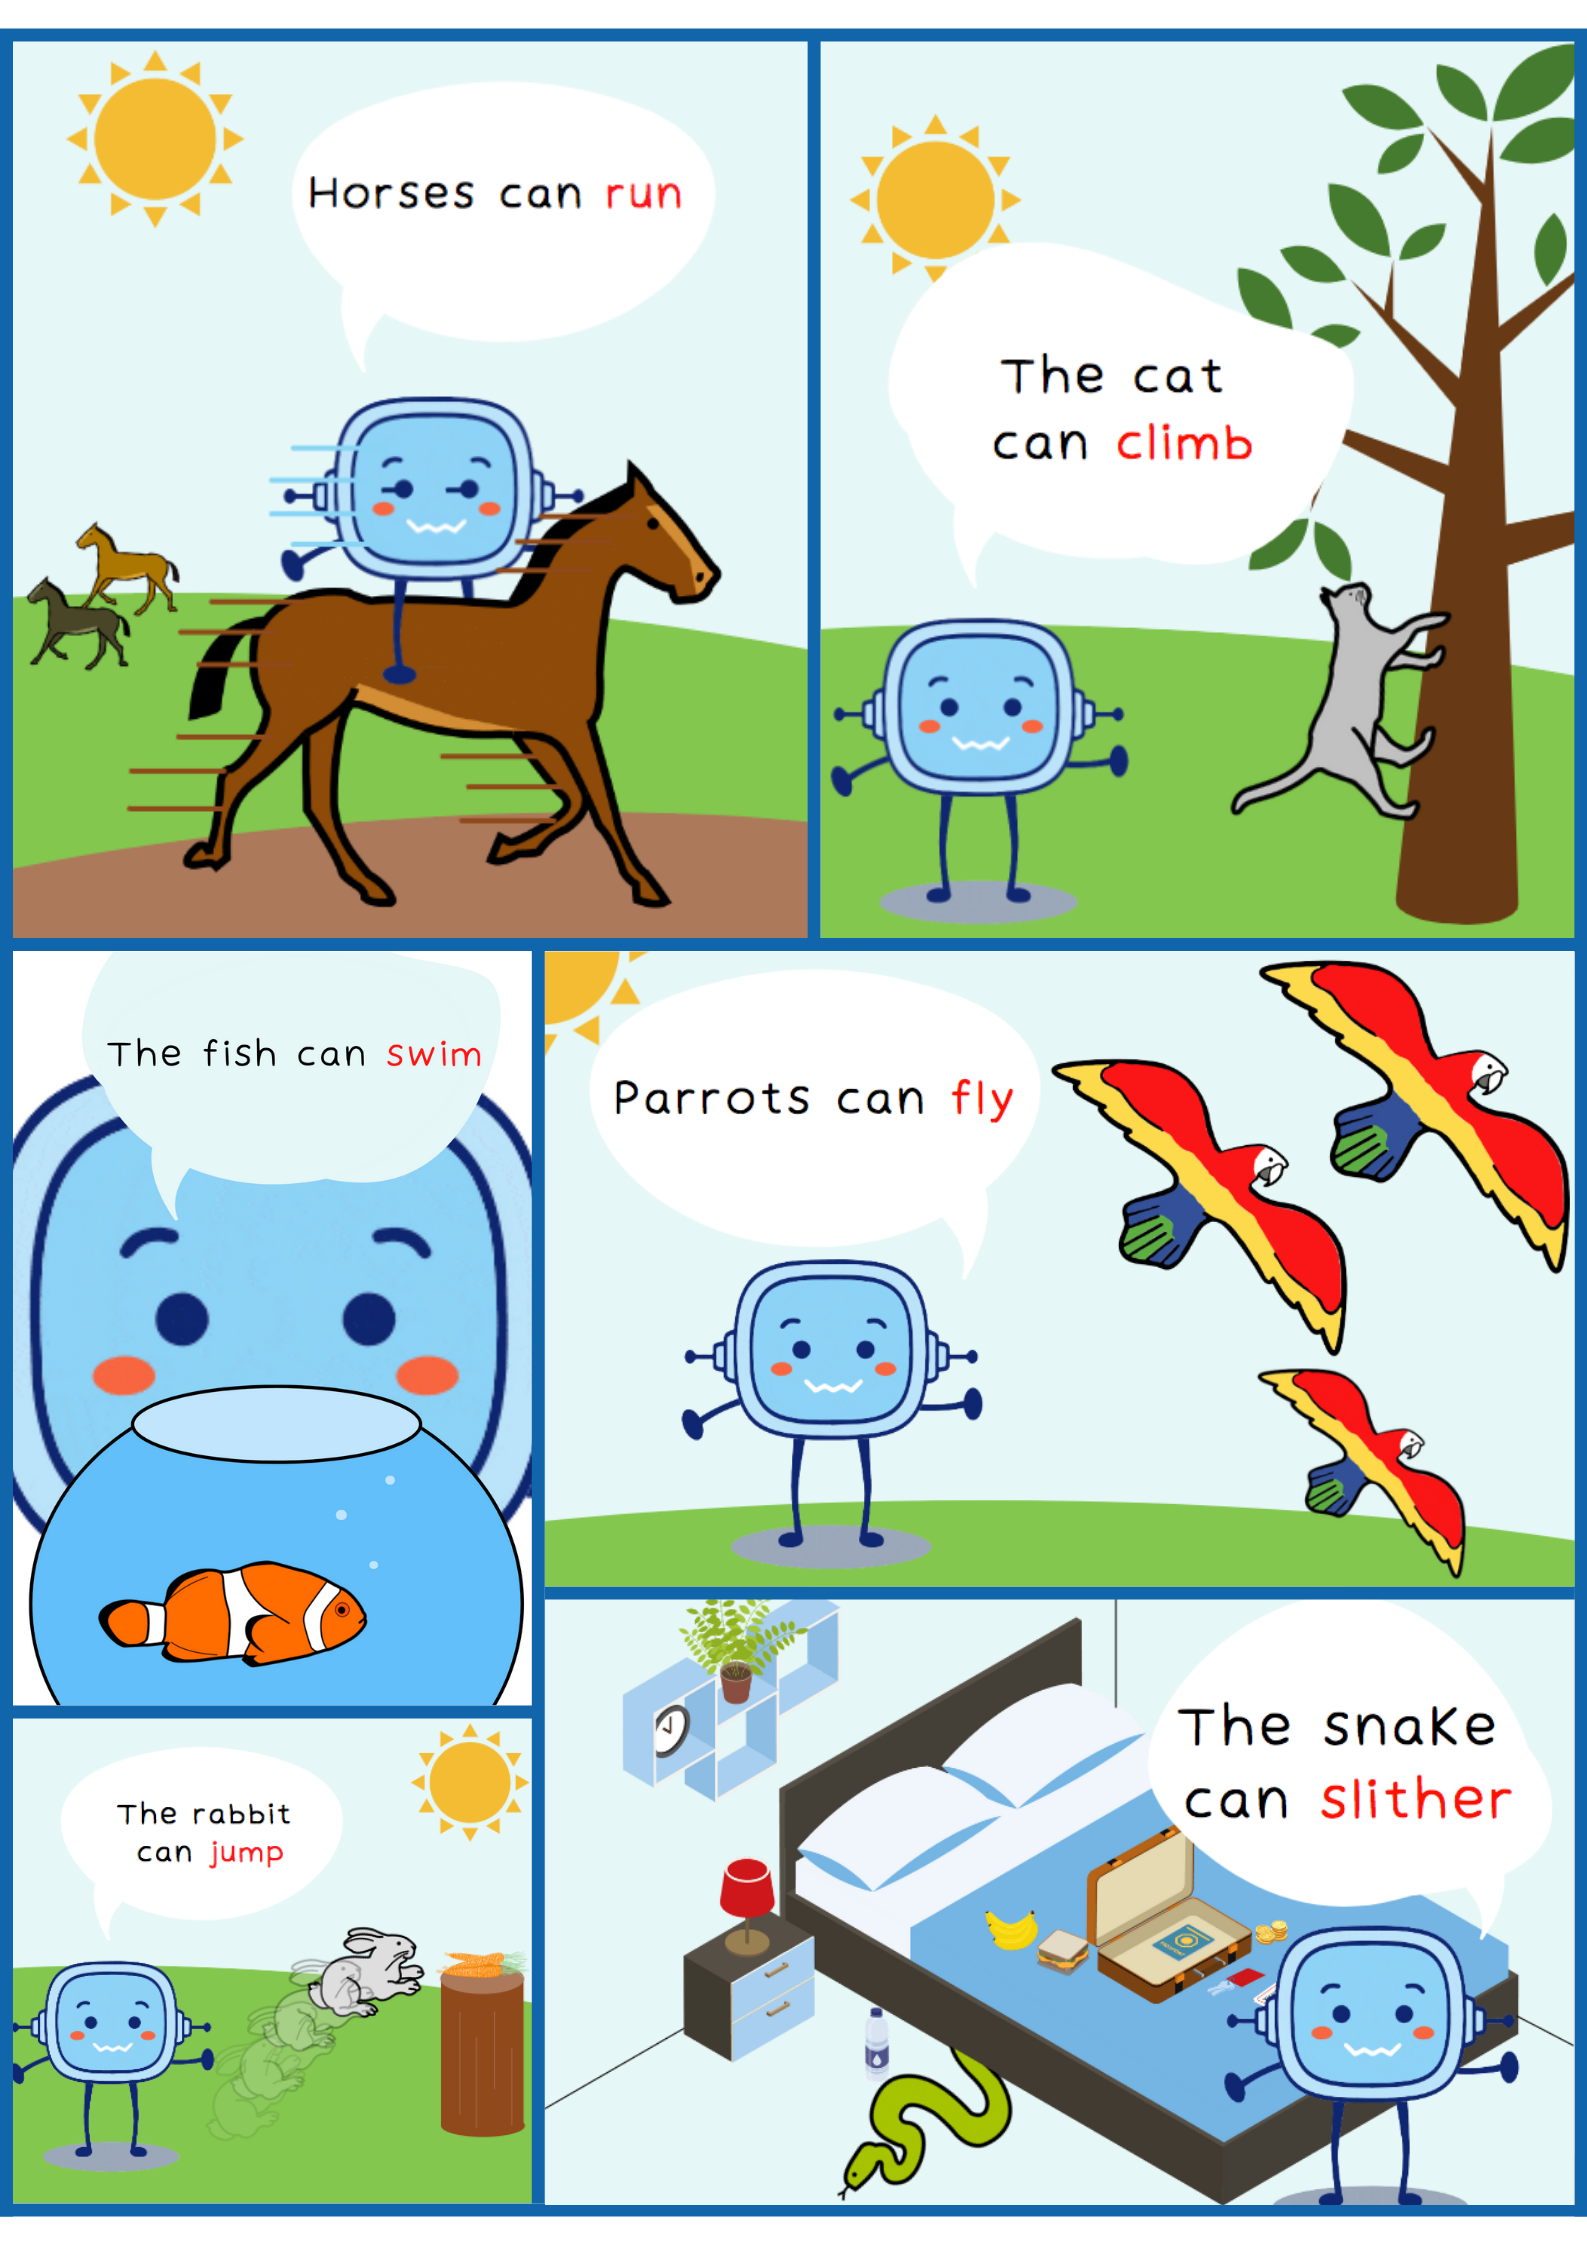 La imagen muestra seis viñetas a modo de cómic donde Rétor enseña los verbos de acción: run, climb, slither, fly, swim y jump.